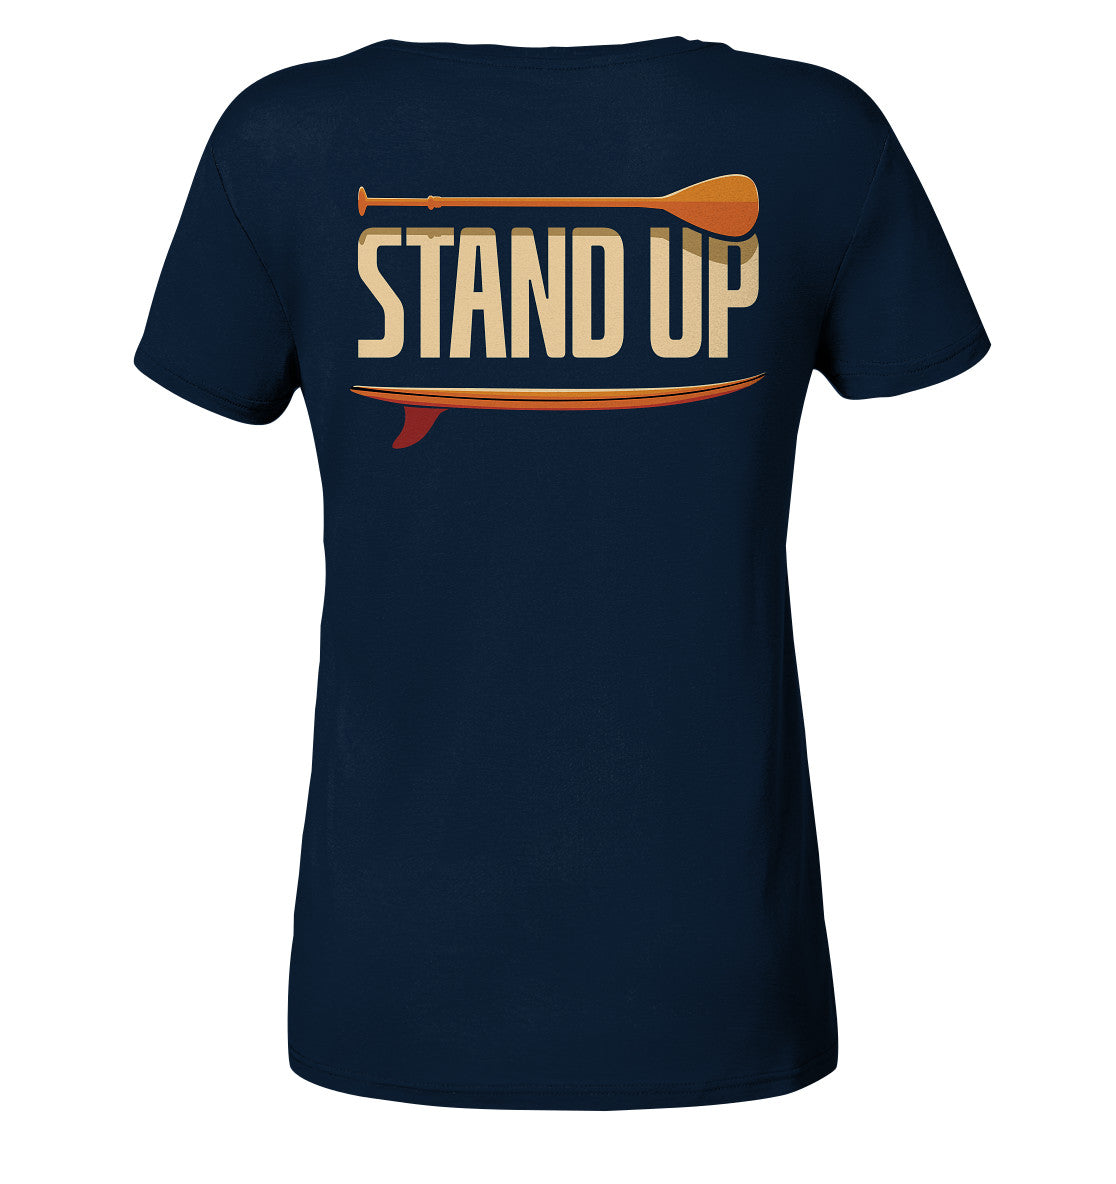 Stand UP - Ladies Organic Shirt